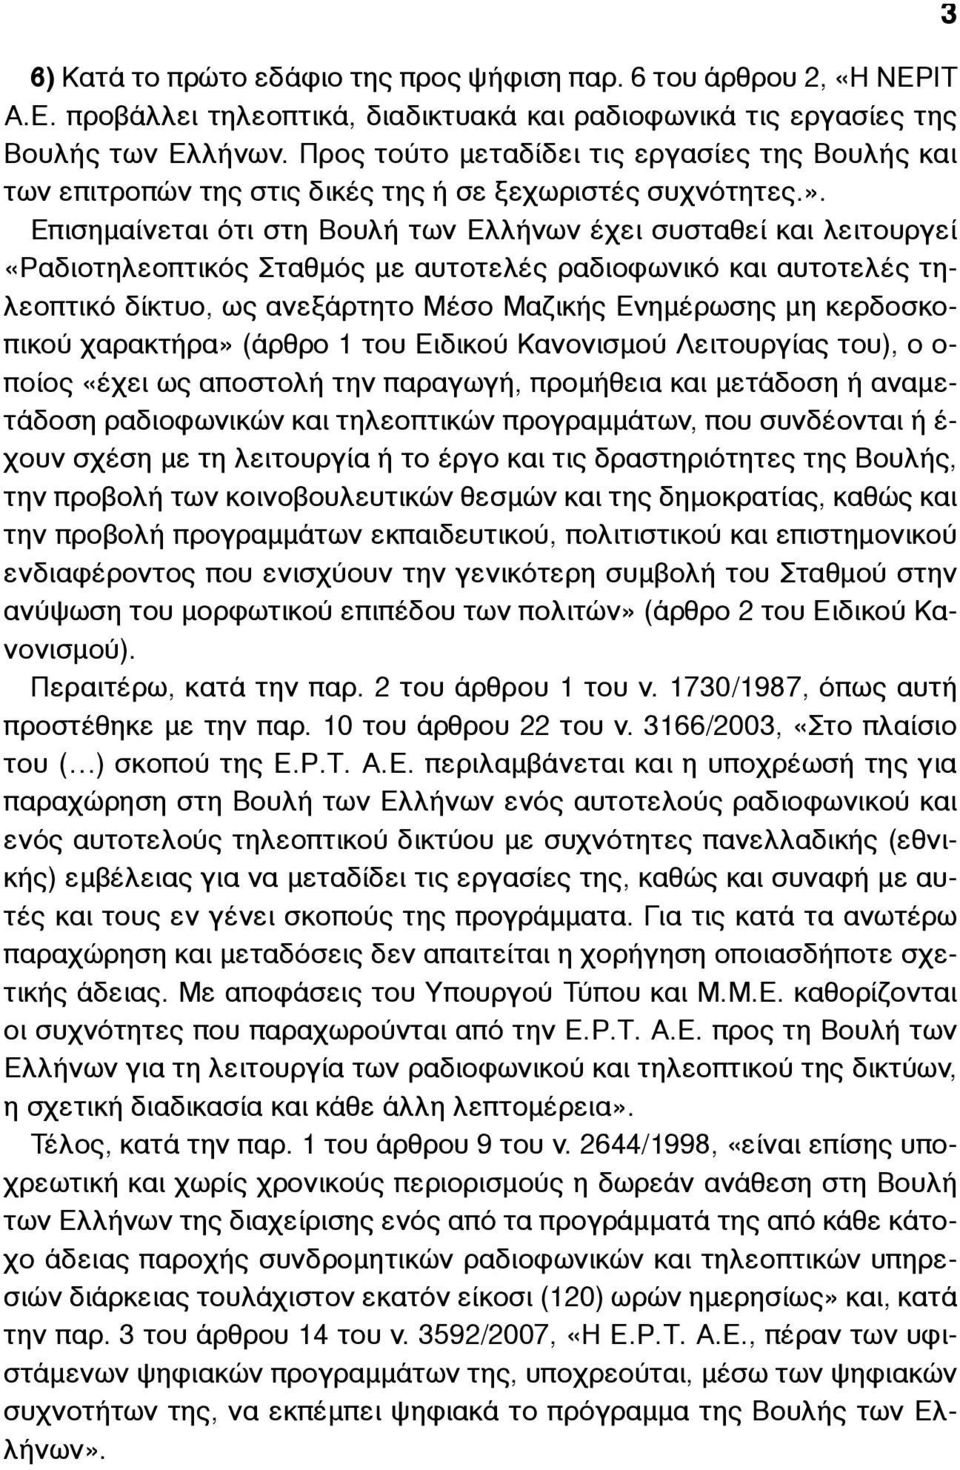 Επισηµαίνεται ότι στη Βουλή των Ελλήνων έχει συσταθεί και λειτουργεί «Ραδιοτηλεοπτικός Σταθµός µε αυτοτελές ραδιοφωνικό και αυτοτελές τηλεοπτικό δίκτυο, ως ανεξάρτητο Μέσο Μαζικής Ενηµέρωσης µη